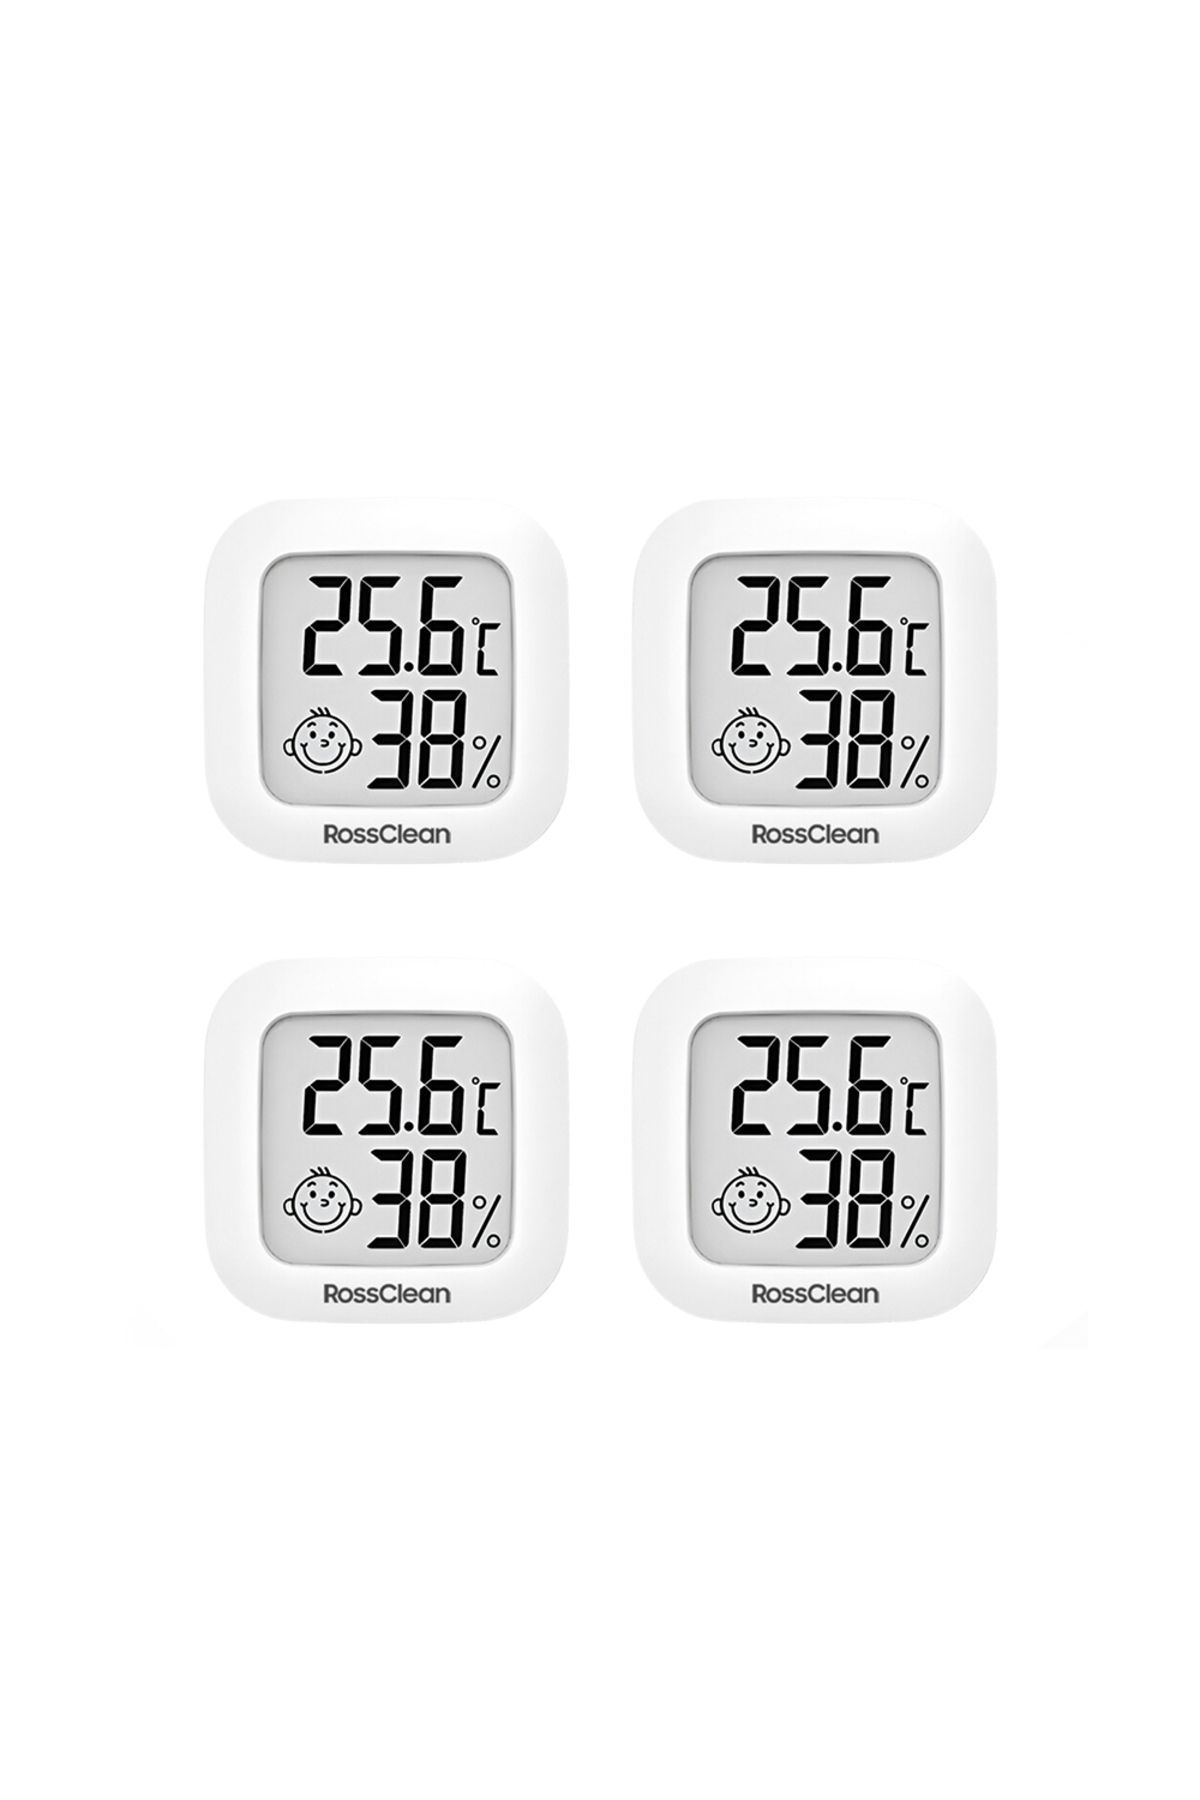 RossClean Smile Dijital Termometre LCD Ekranlı Yüksek Hassasiyetli Sıcaklık ve Nem Ölçer 4lü Set